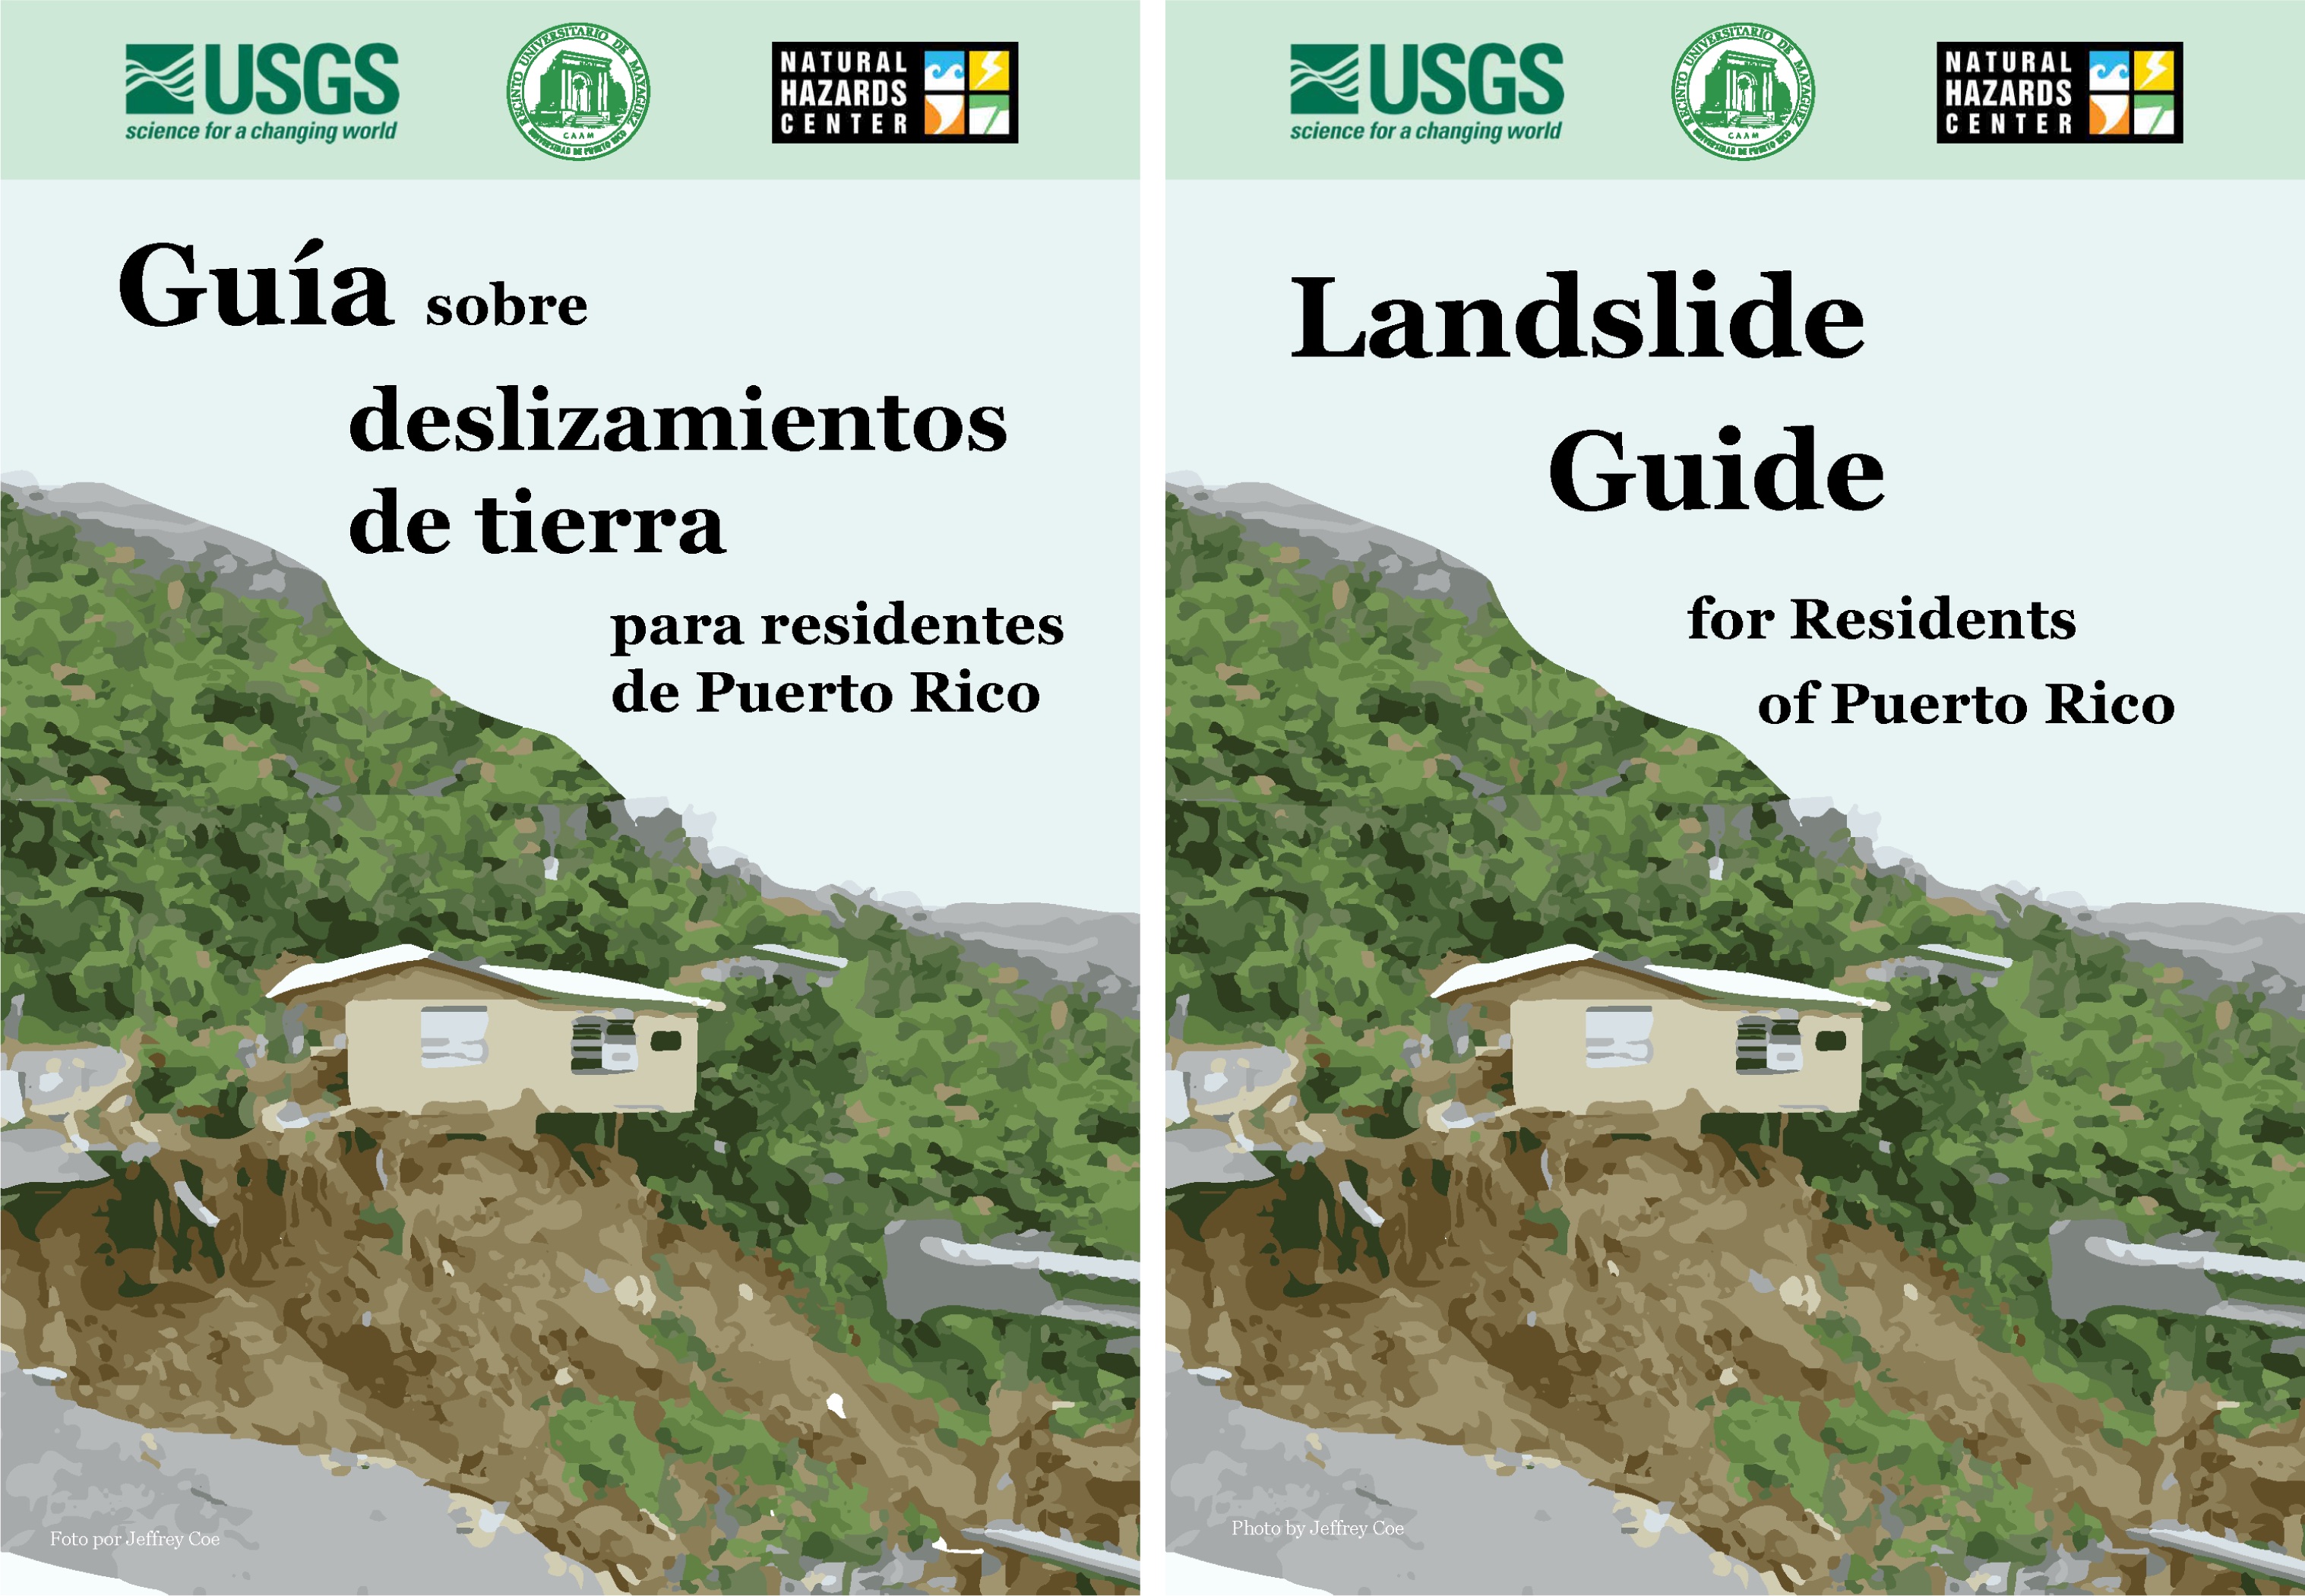 Landslide Guide